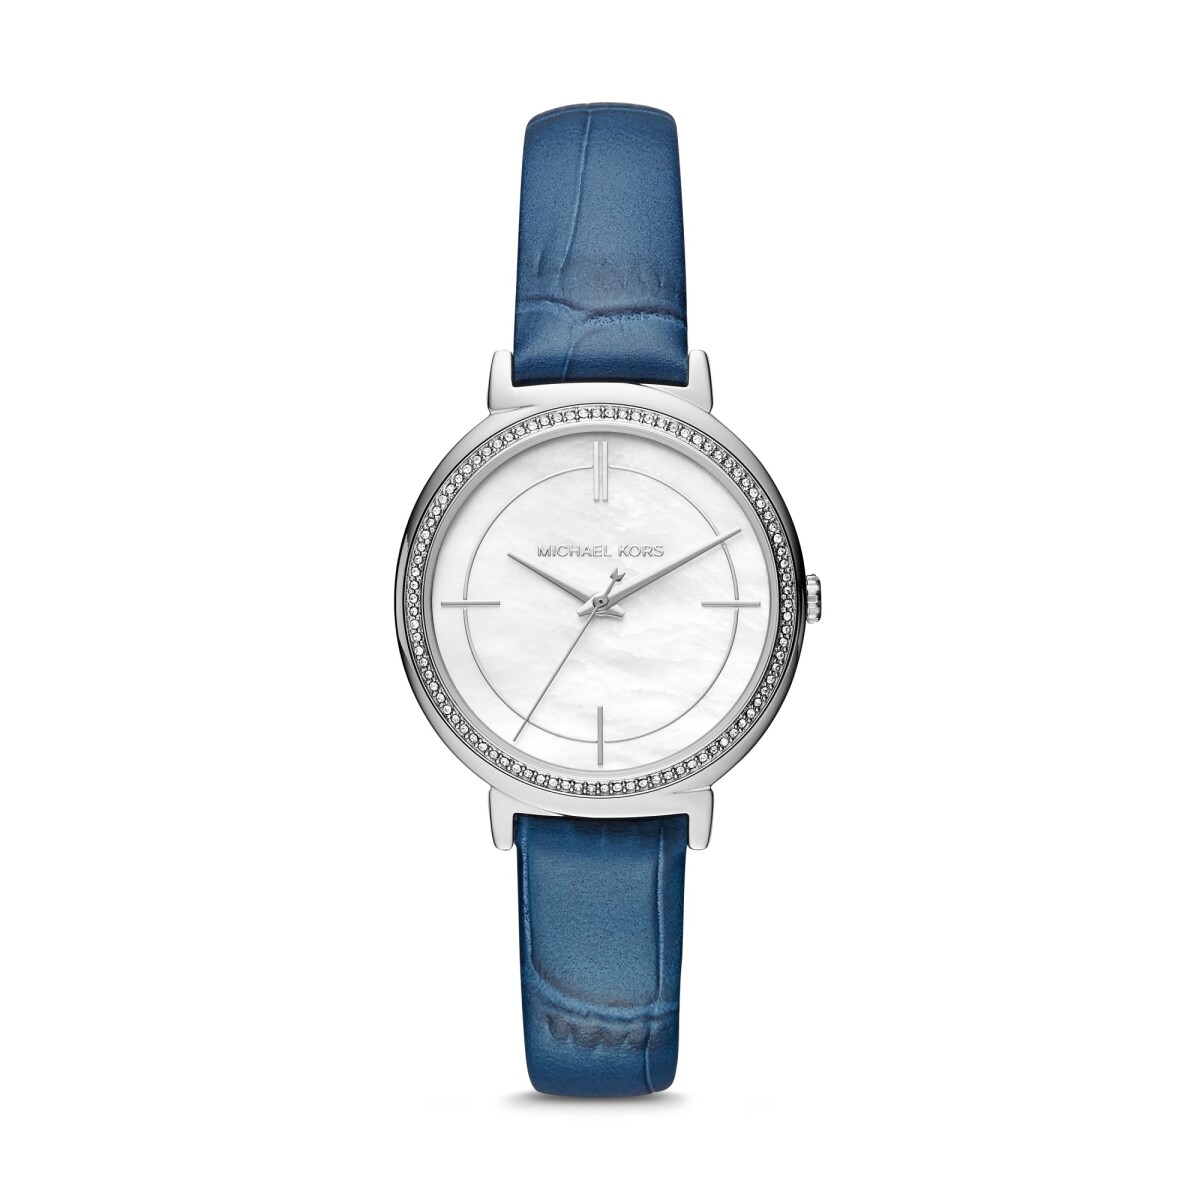 Reloj Michael Kors Fashion Cuero Azul 